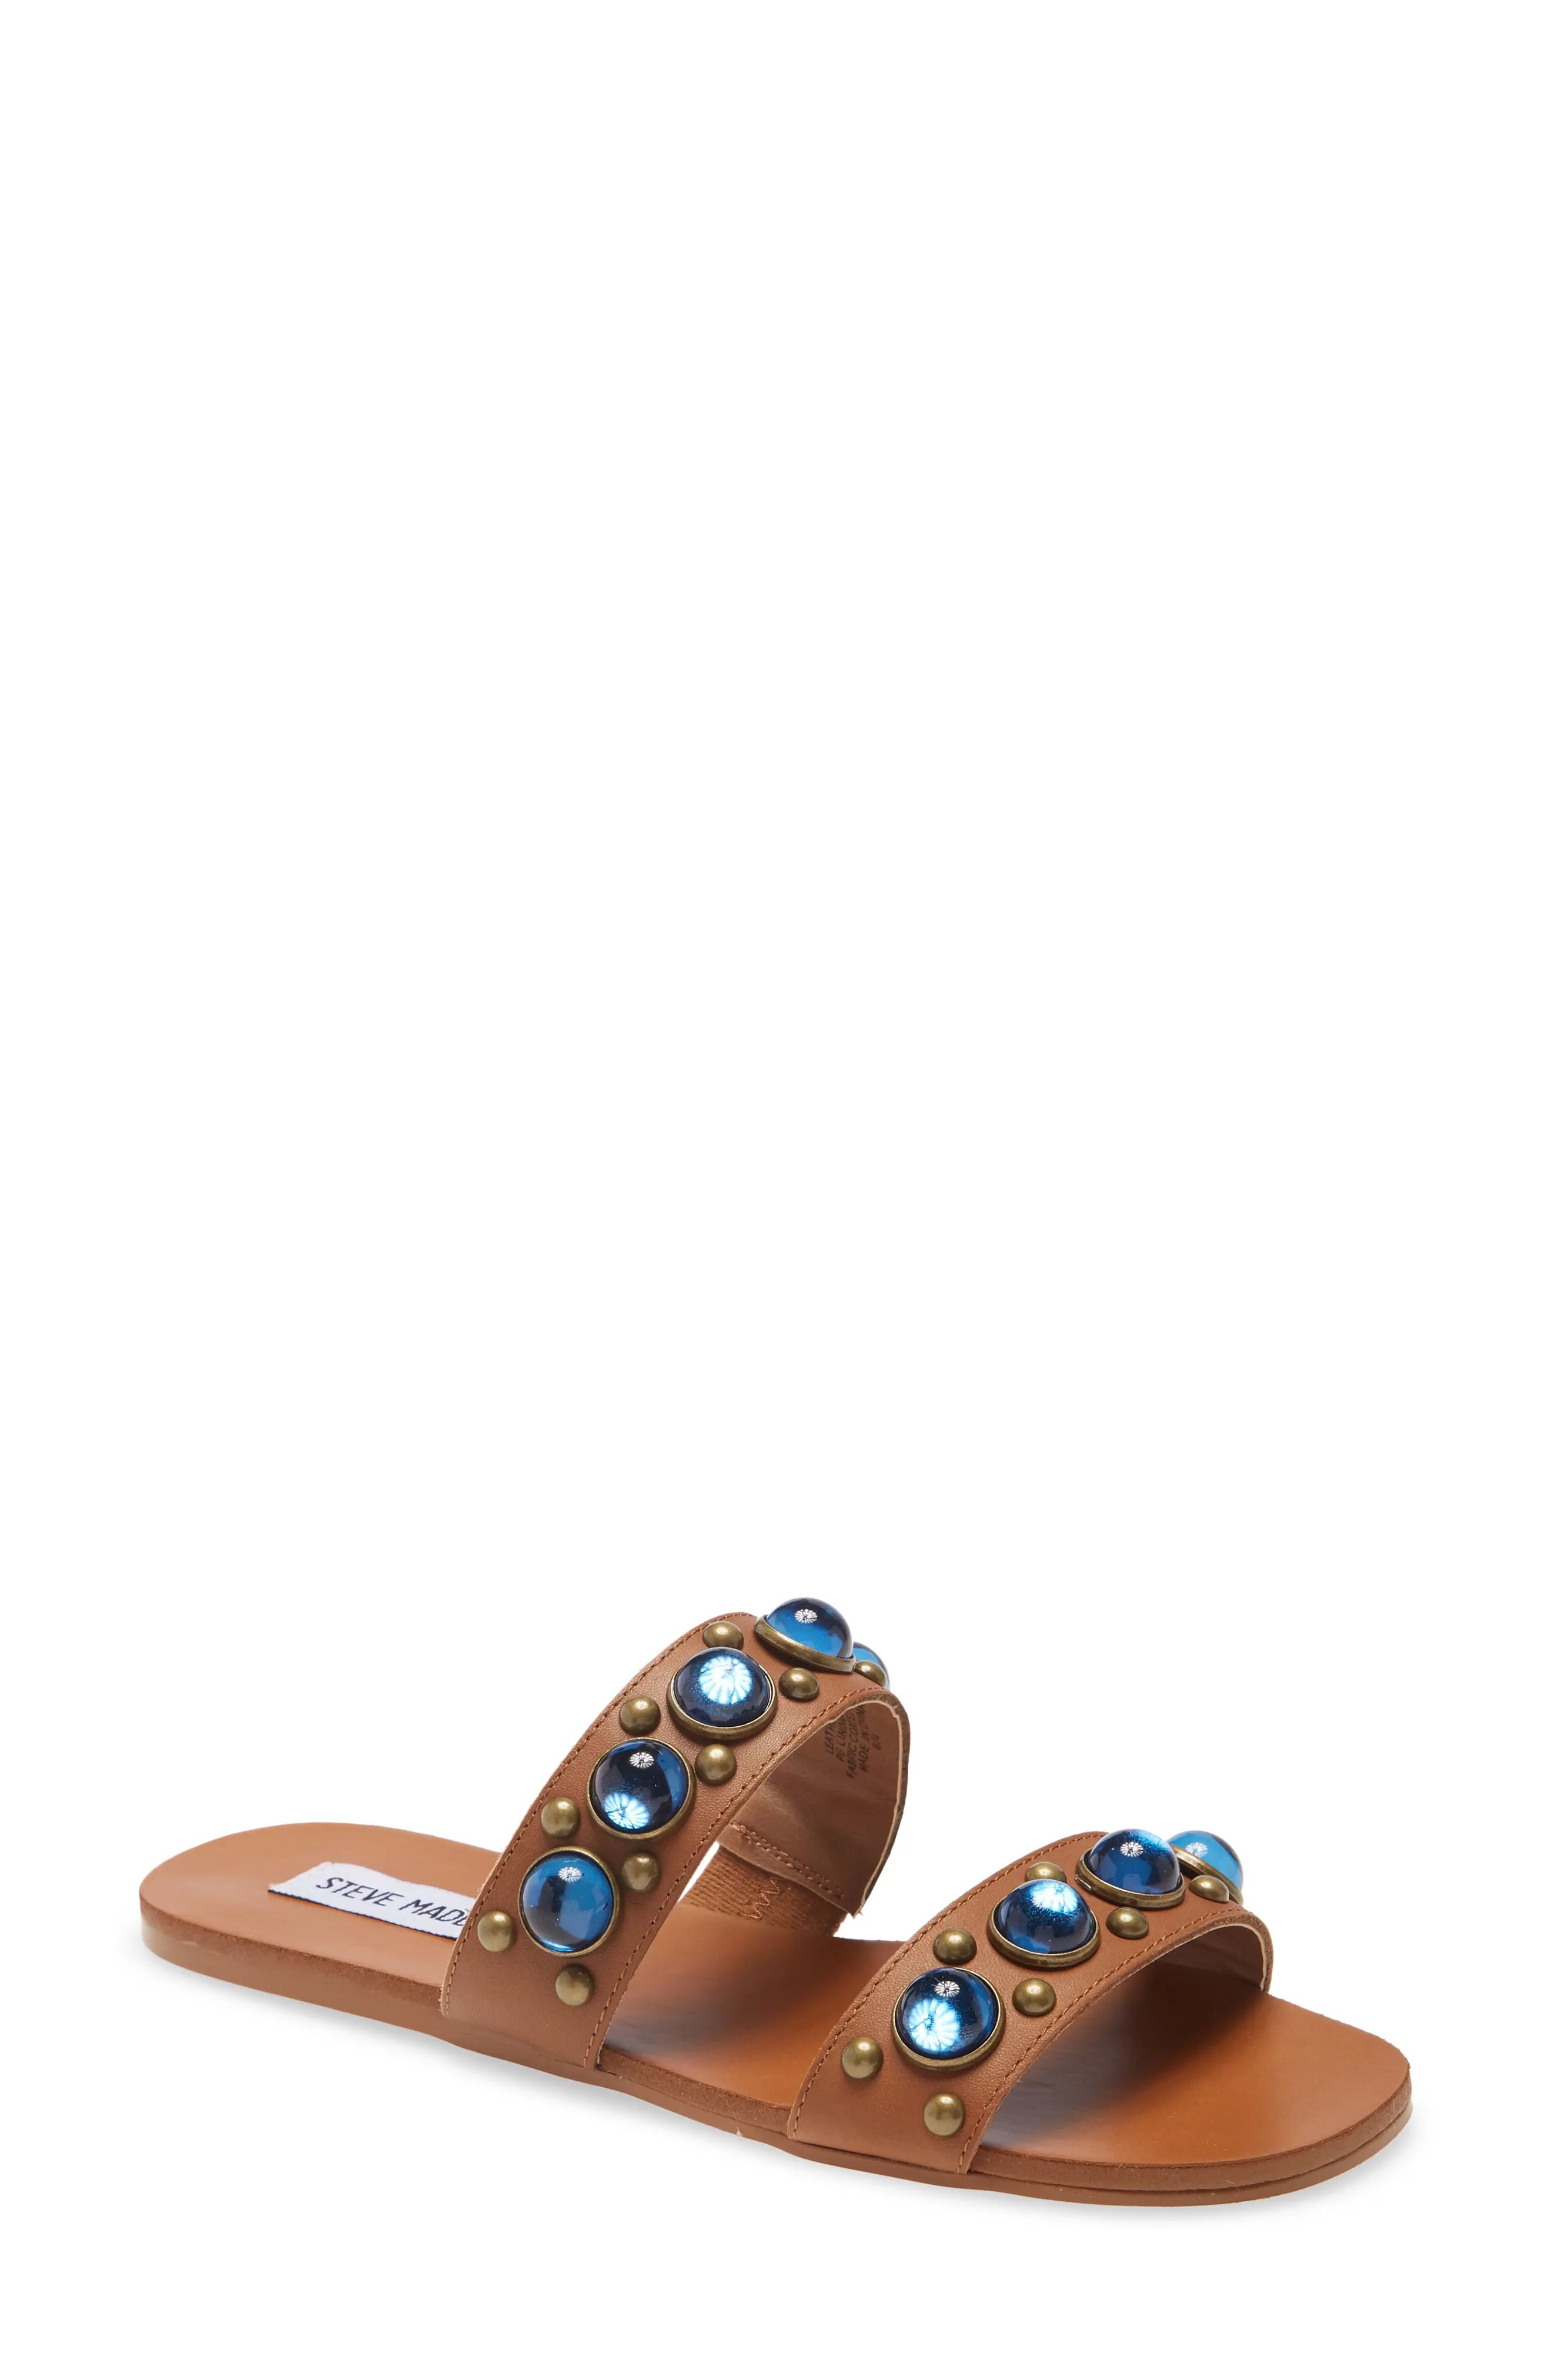 Women's Steve Madden Deka Slide Sandal, Size 8.5 M - Brown | Nordstrom